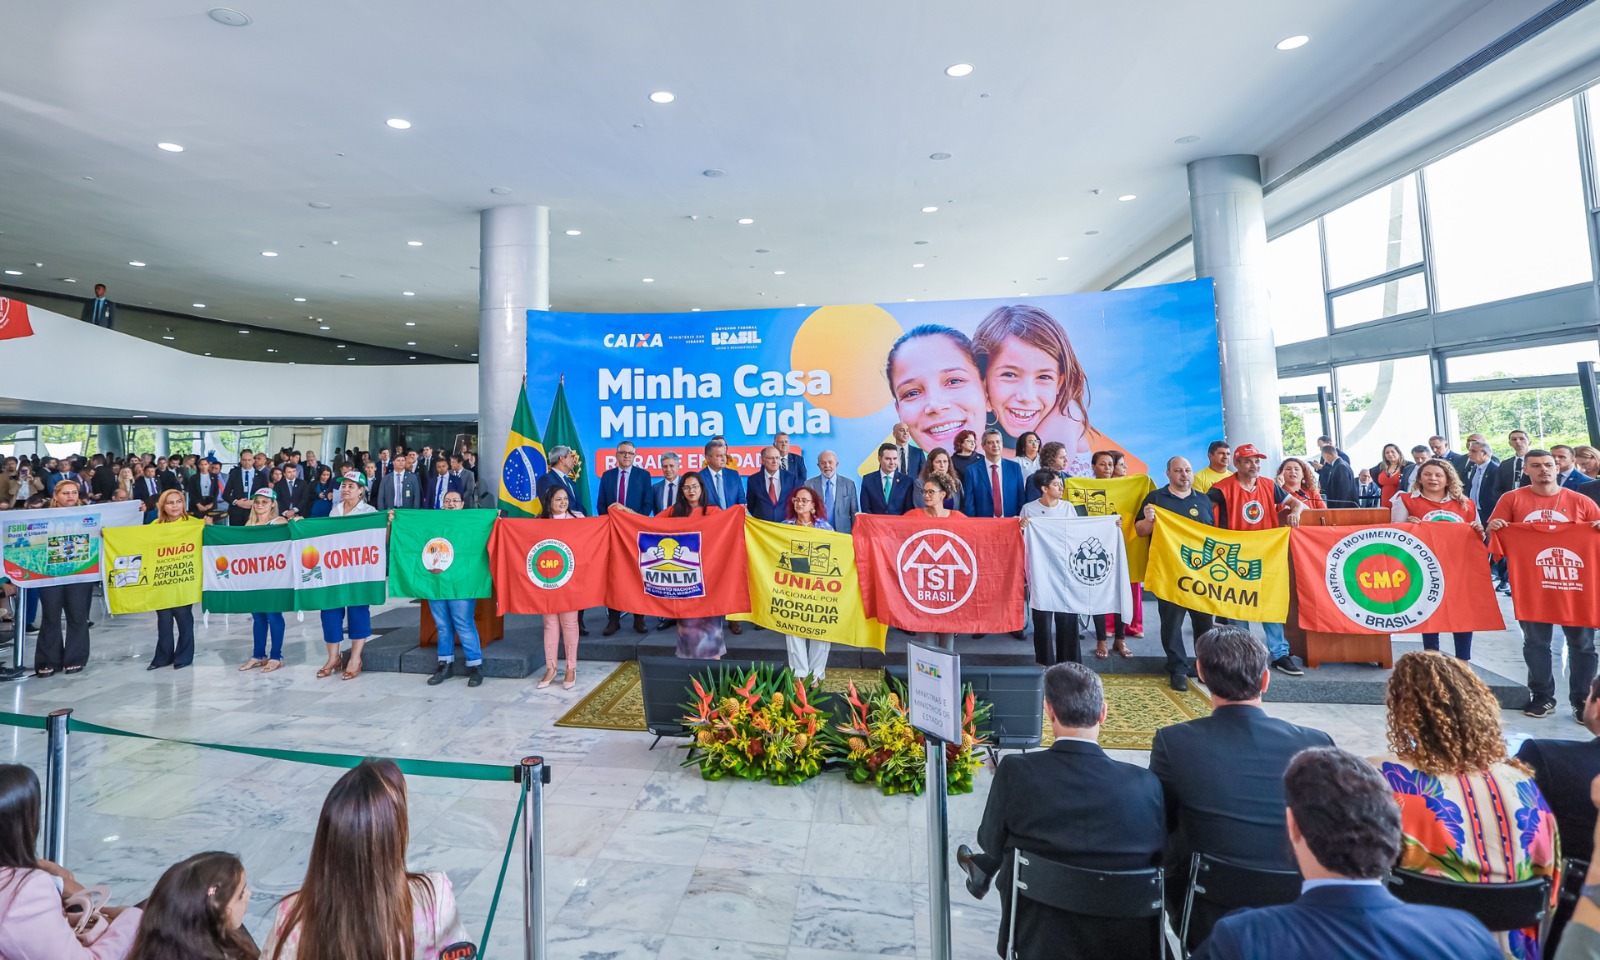 MCMV Entidades e Rural superam expectativas com mais de 110 mil moradias selecionadas, beneficiando comunidades urbanas e rurais em todo o Brasil com o Programa Minha Casa Minha Vida